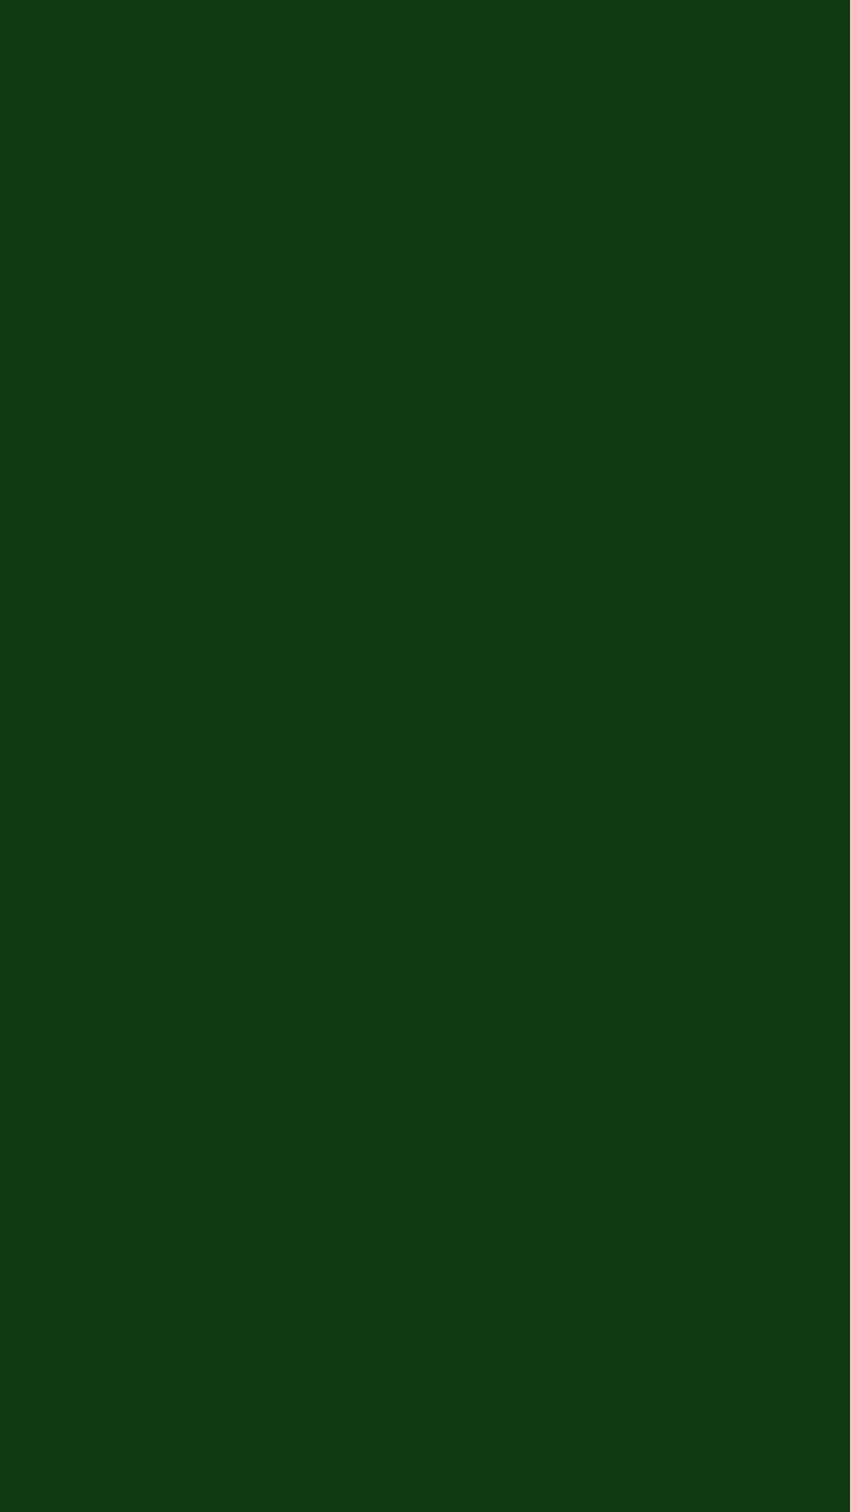 Verde Sólido, Liso Verde Oscuro fondo de pantalla del teléfono